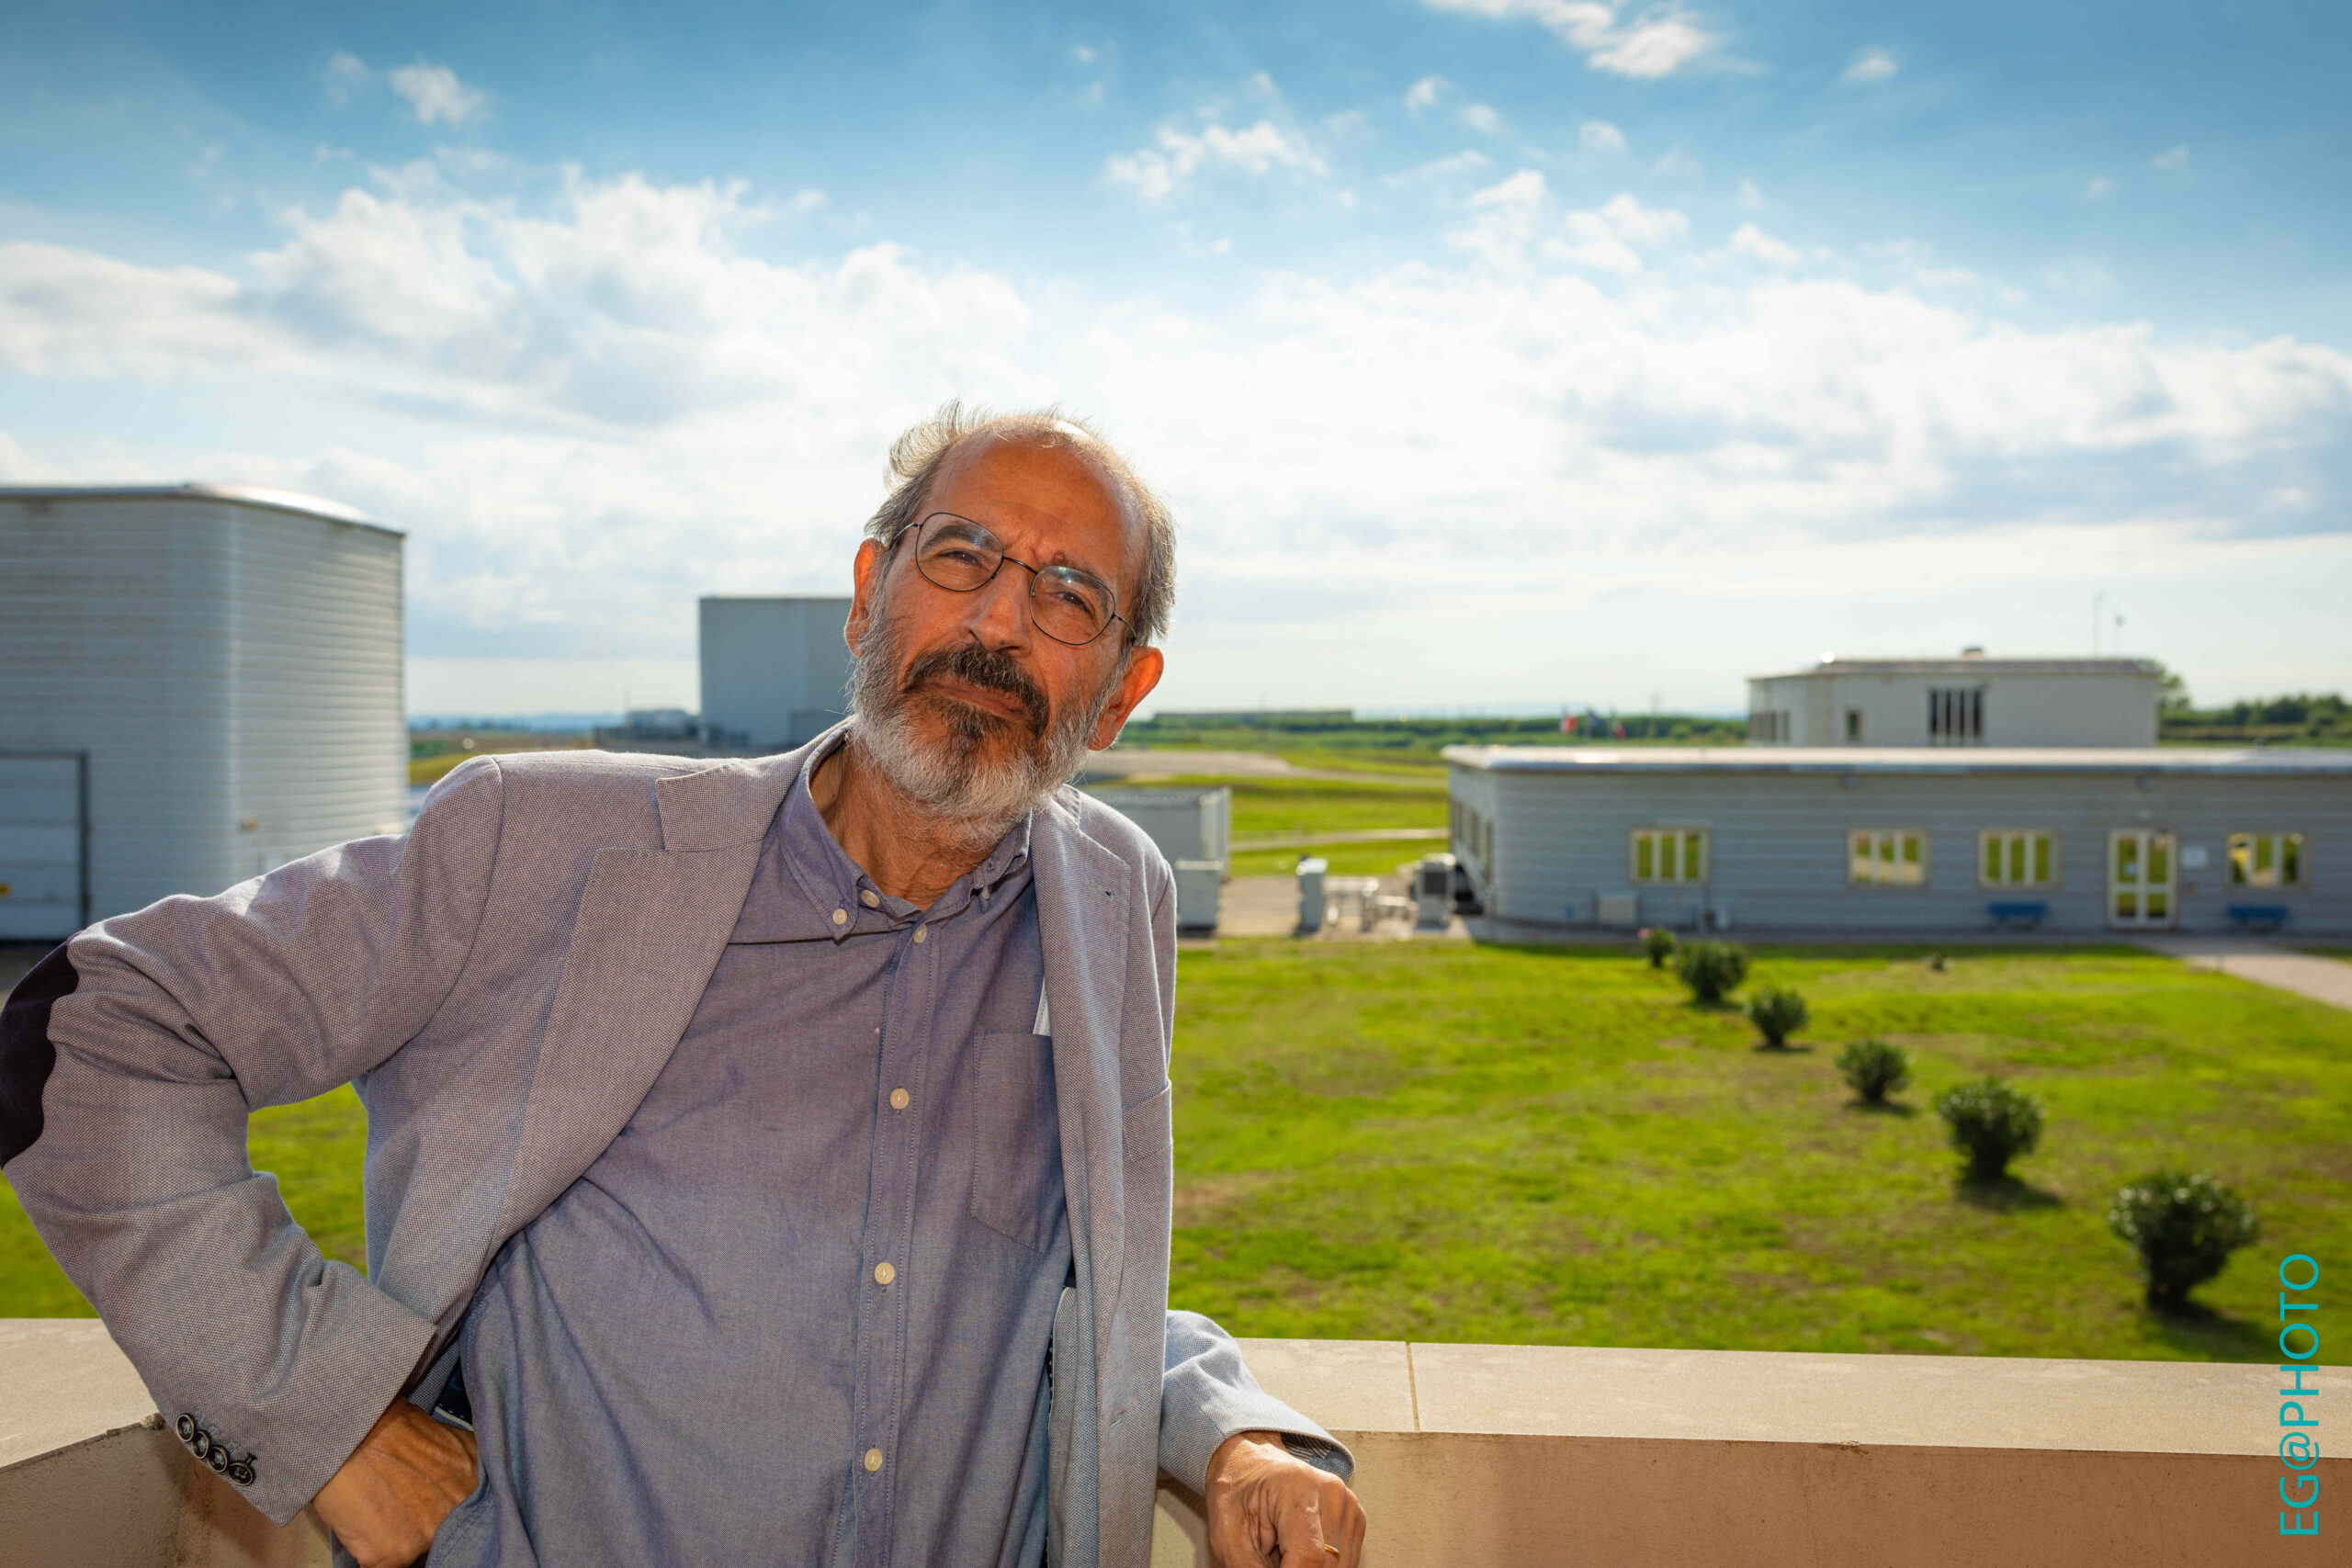 Lutto nel mondo della fisica: Stavros Katsanevas, direttore dell’ Osservatorio Gravitazionale Europeo, ci ha lasciati la scorsa notte